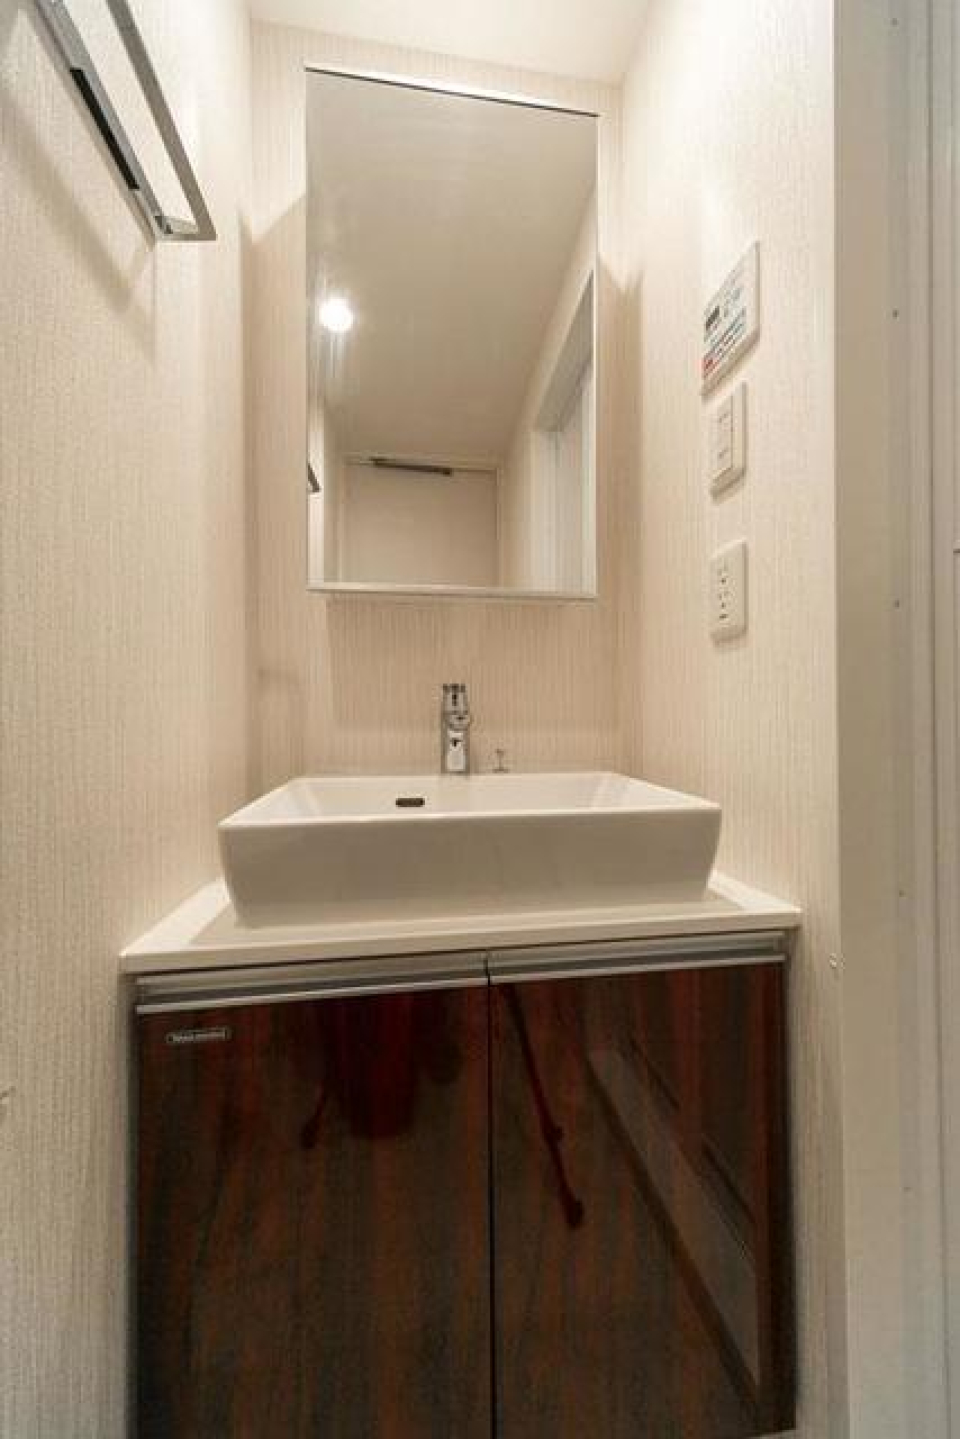 ブラウンのパネルが採用された洗面台です。※写真は同タイプ住戸です。